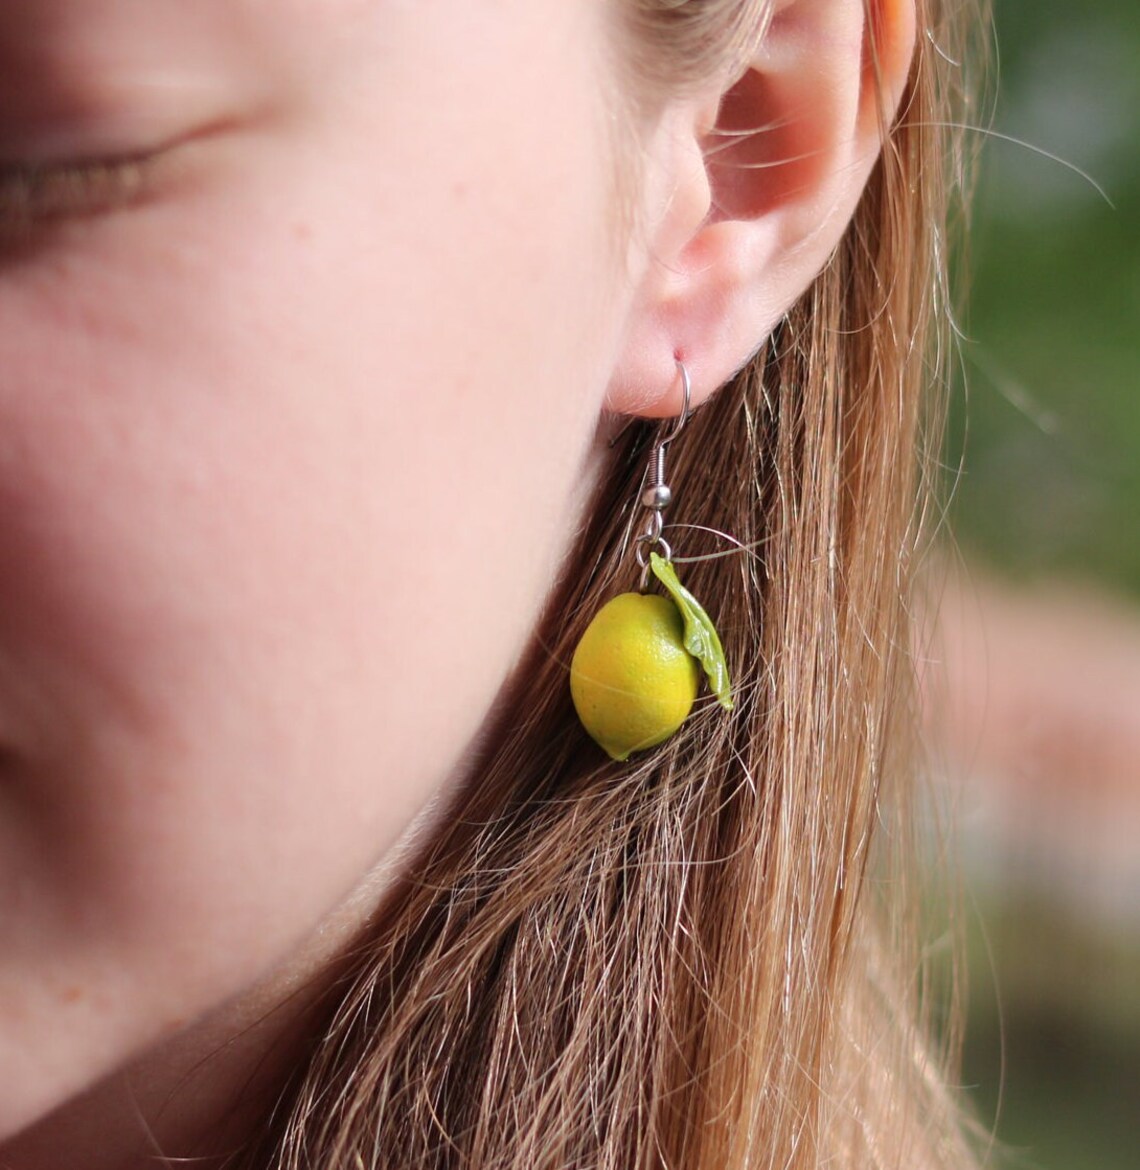 Hyper Realistic Fruit Earrings By Helen Creative (12)